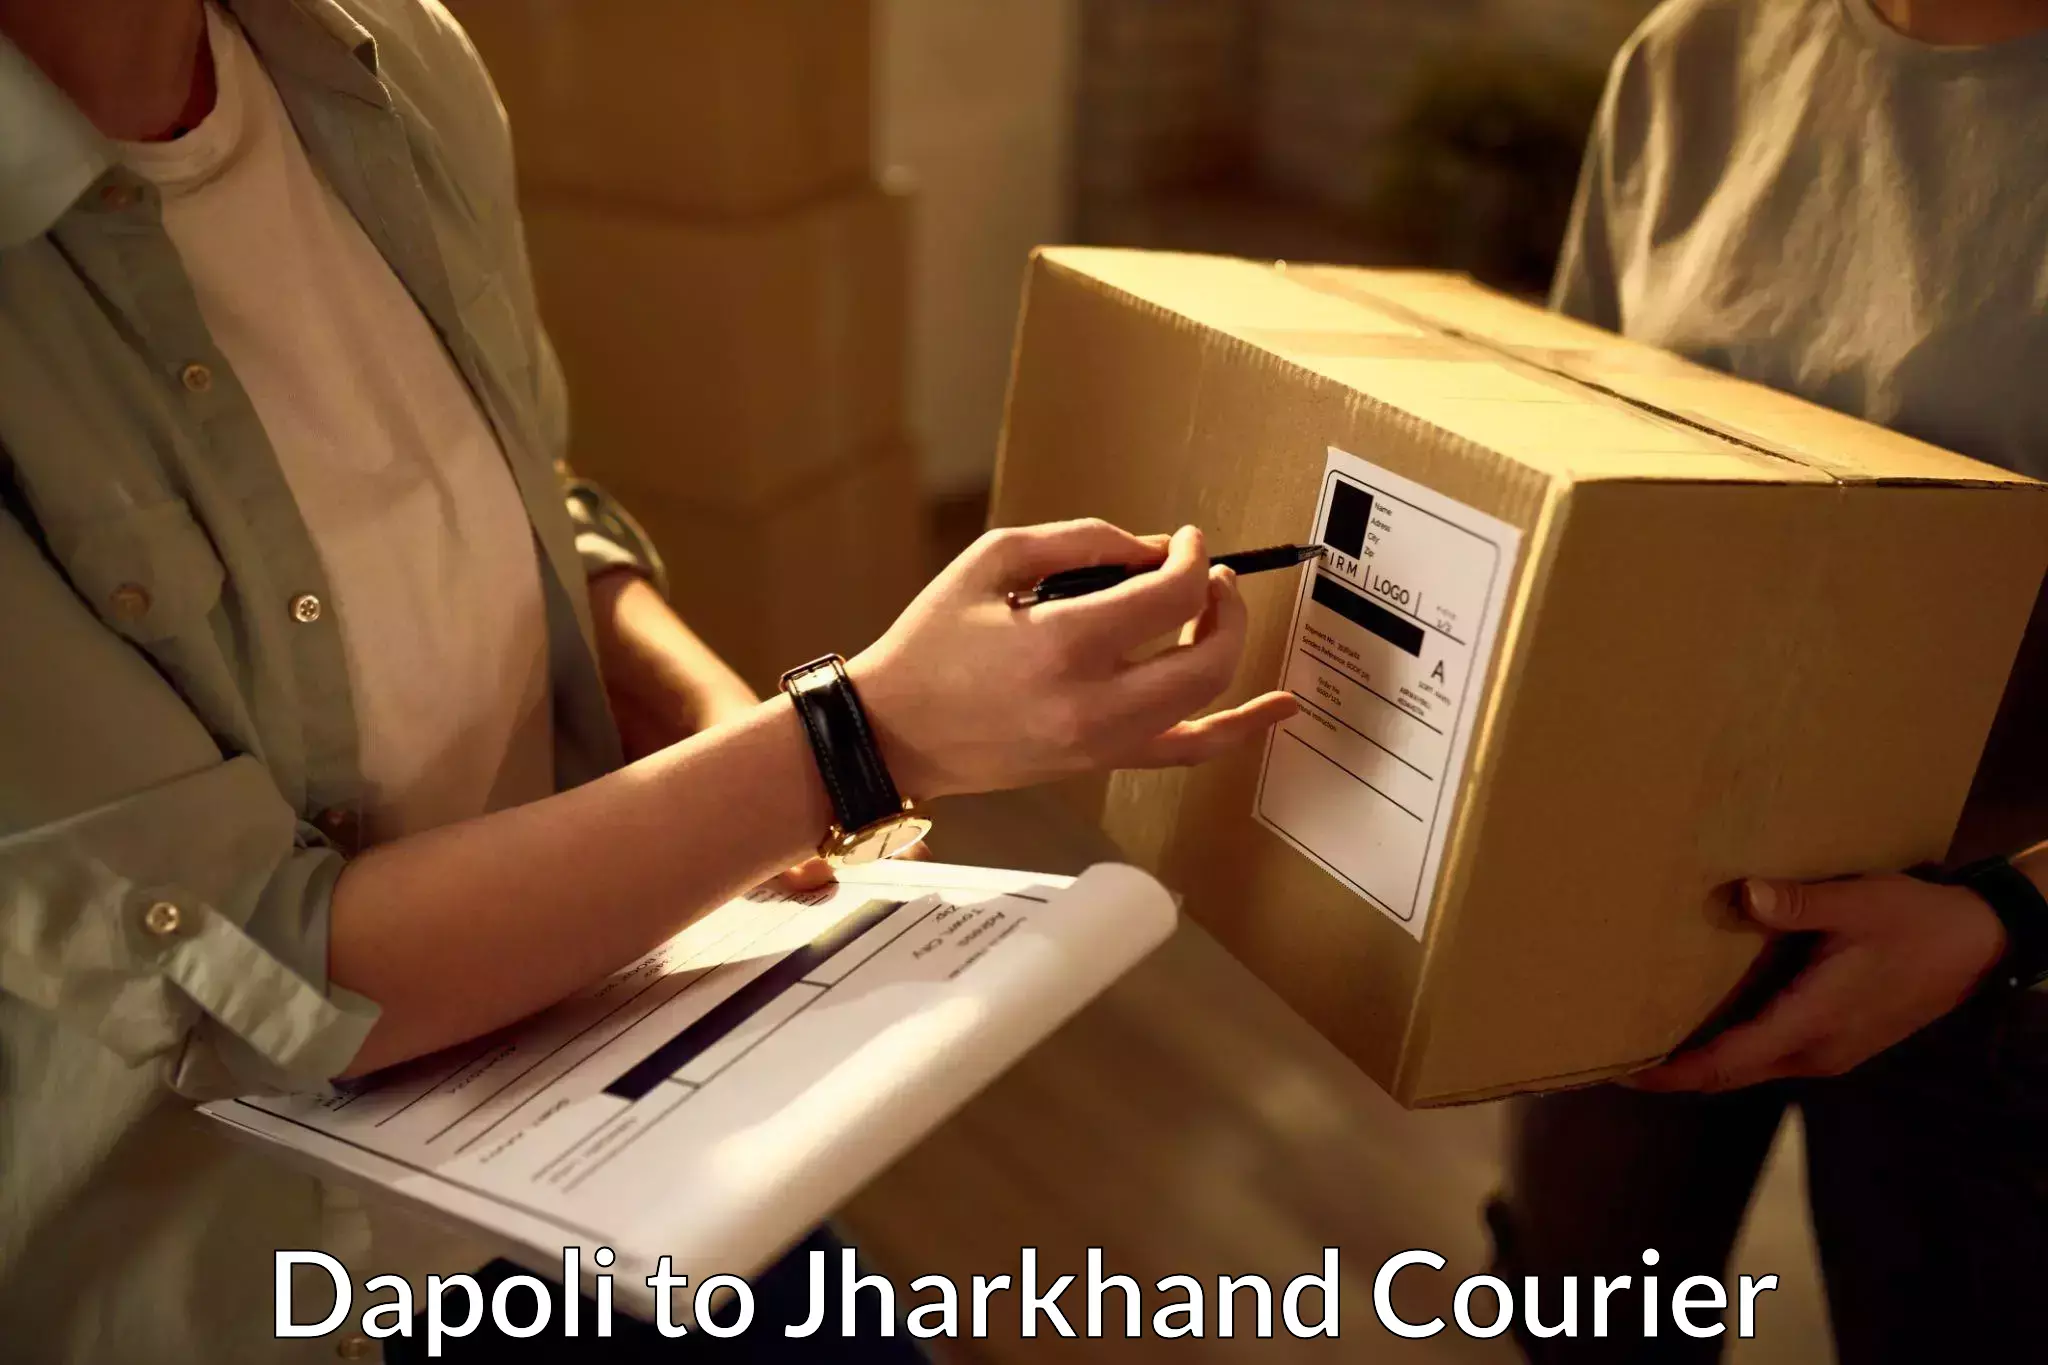 Bulk courier orders Dapoli to Itkhori